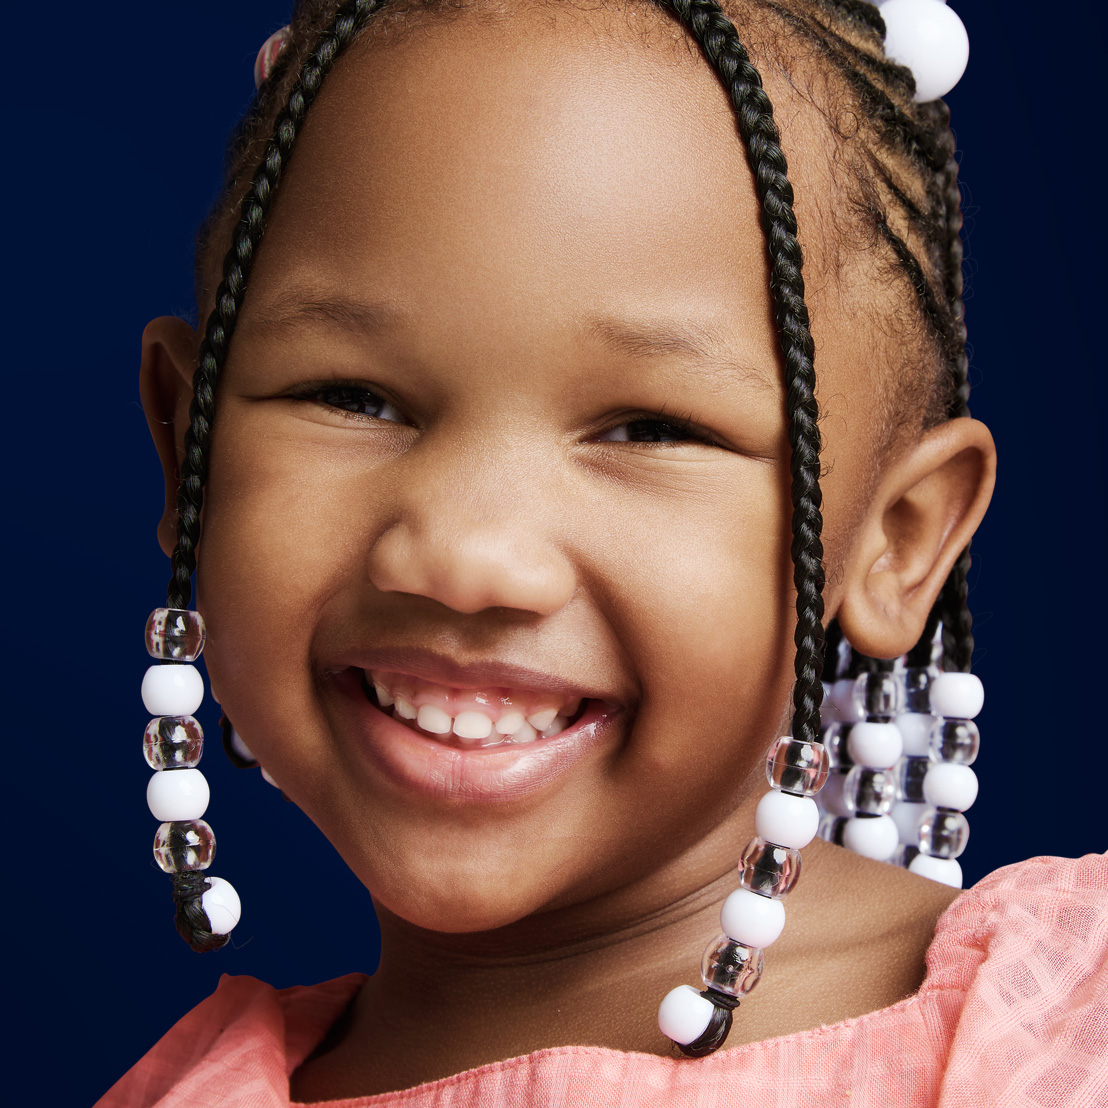 Jordan Orthodontics Rising Star early growth guidance program smiling little girl